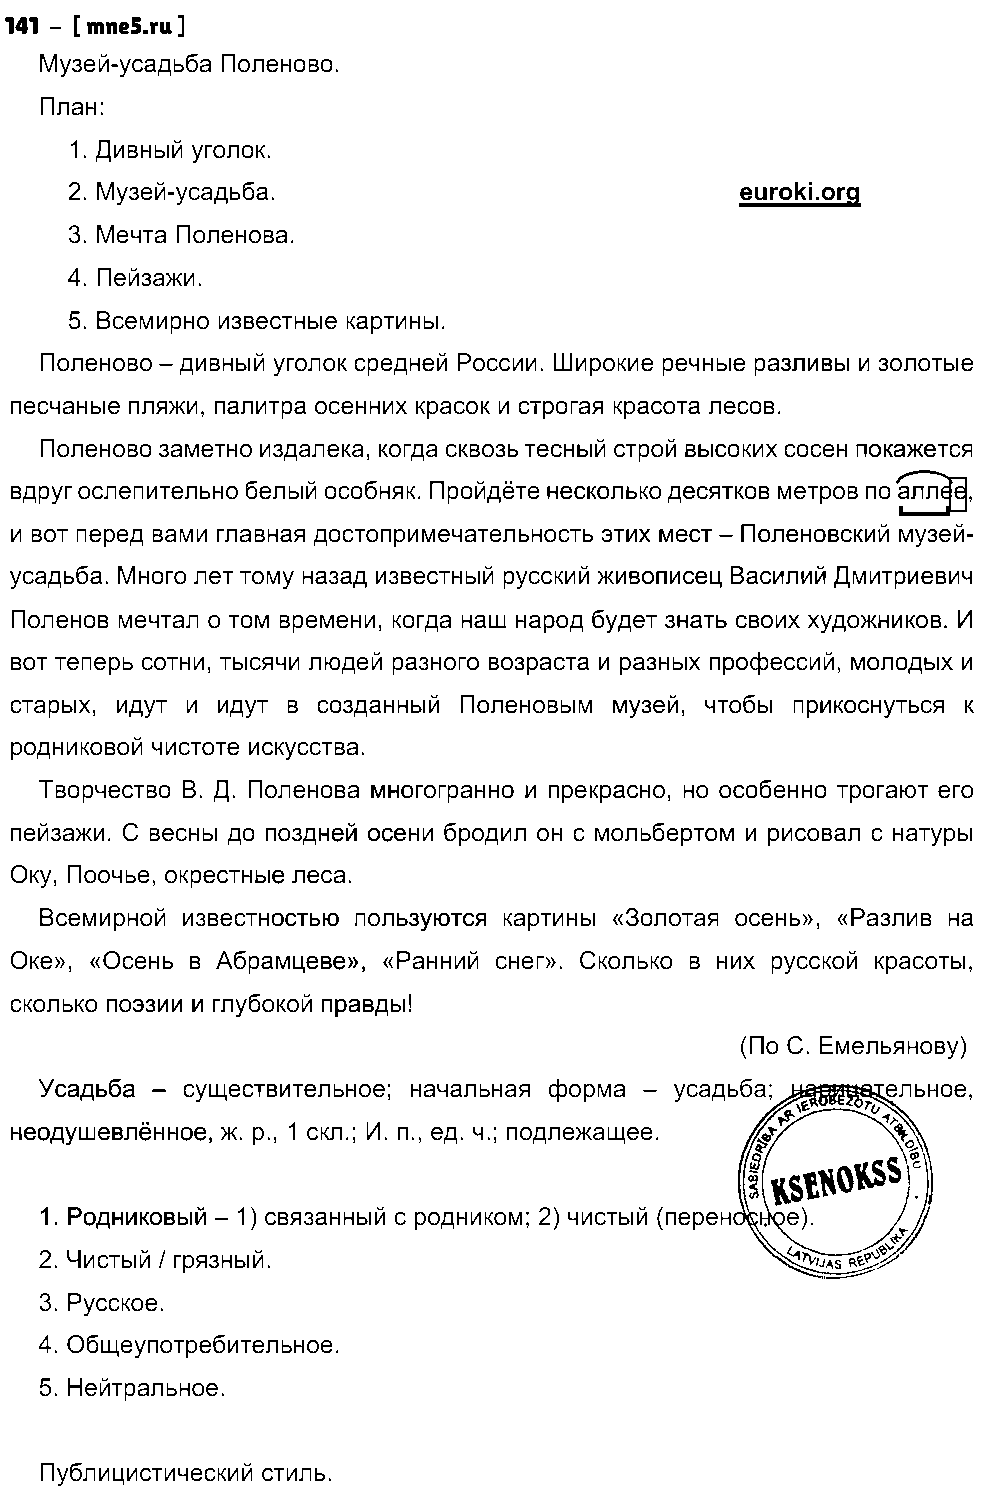 ГДЗ Русский язык 8 класс - 109